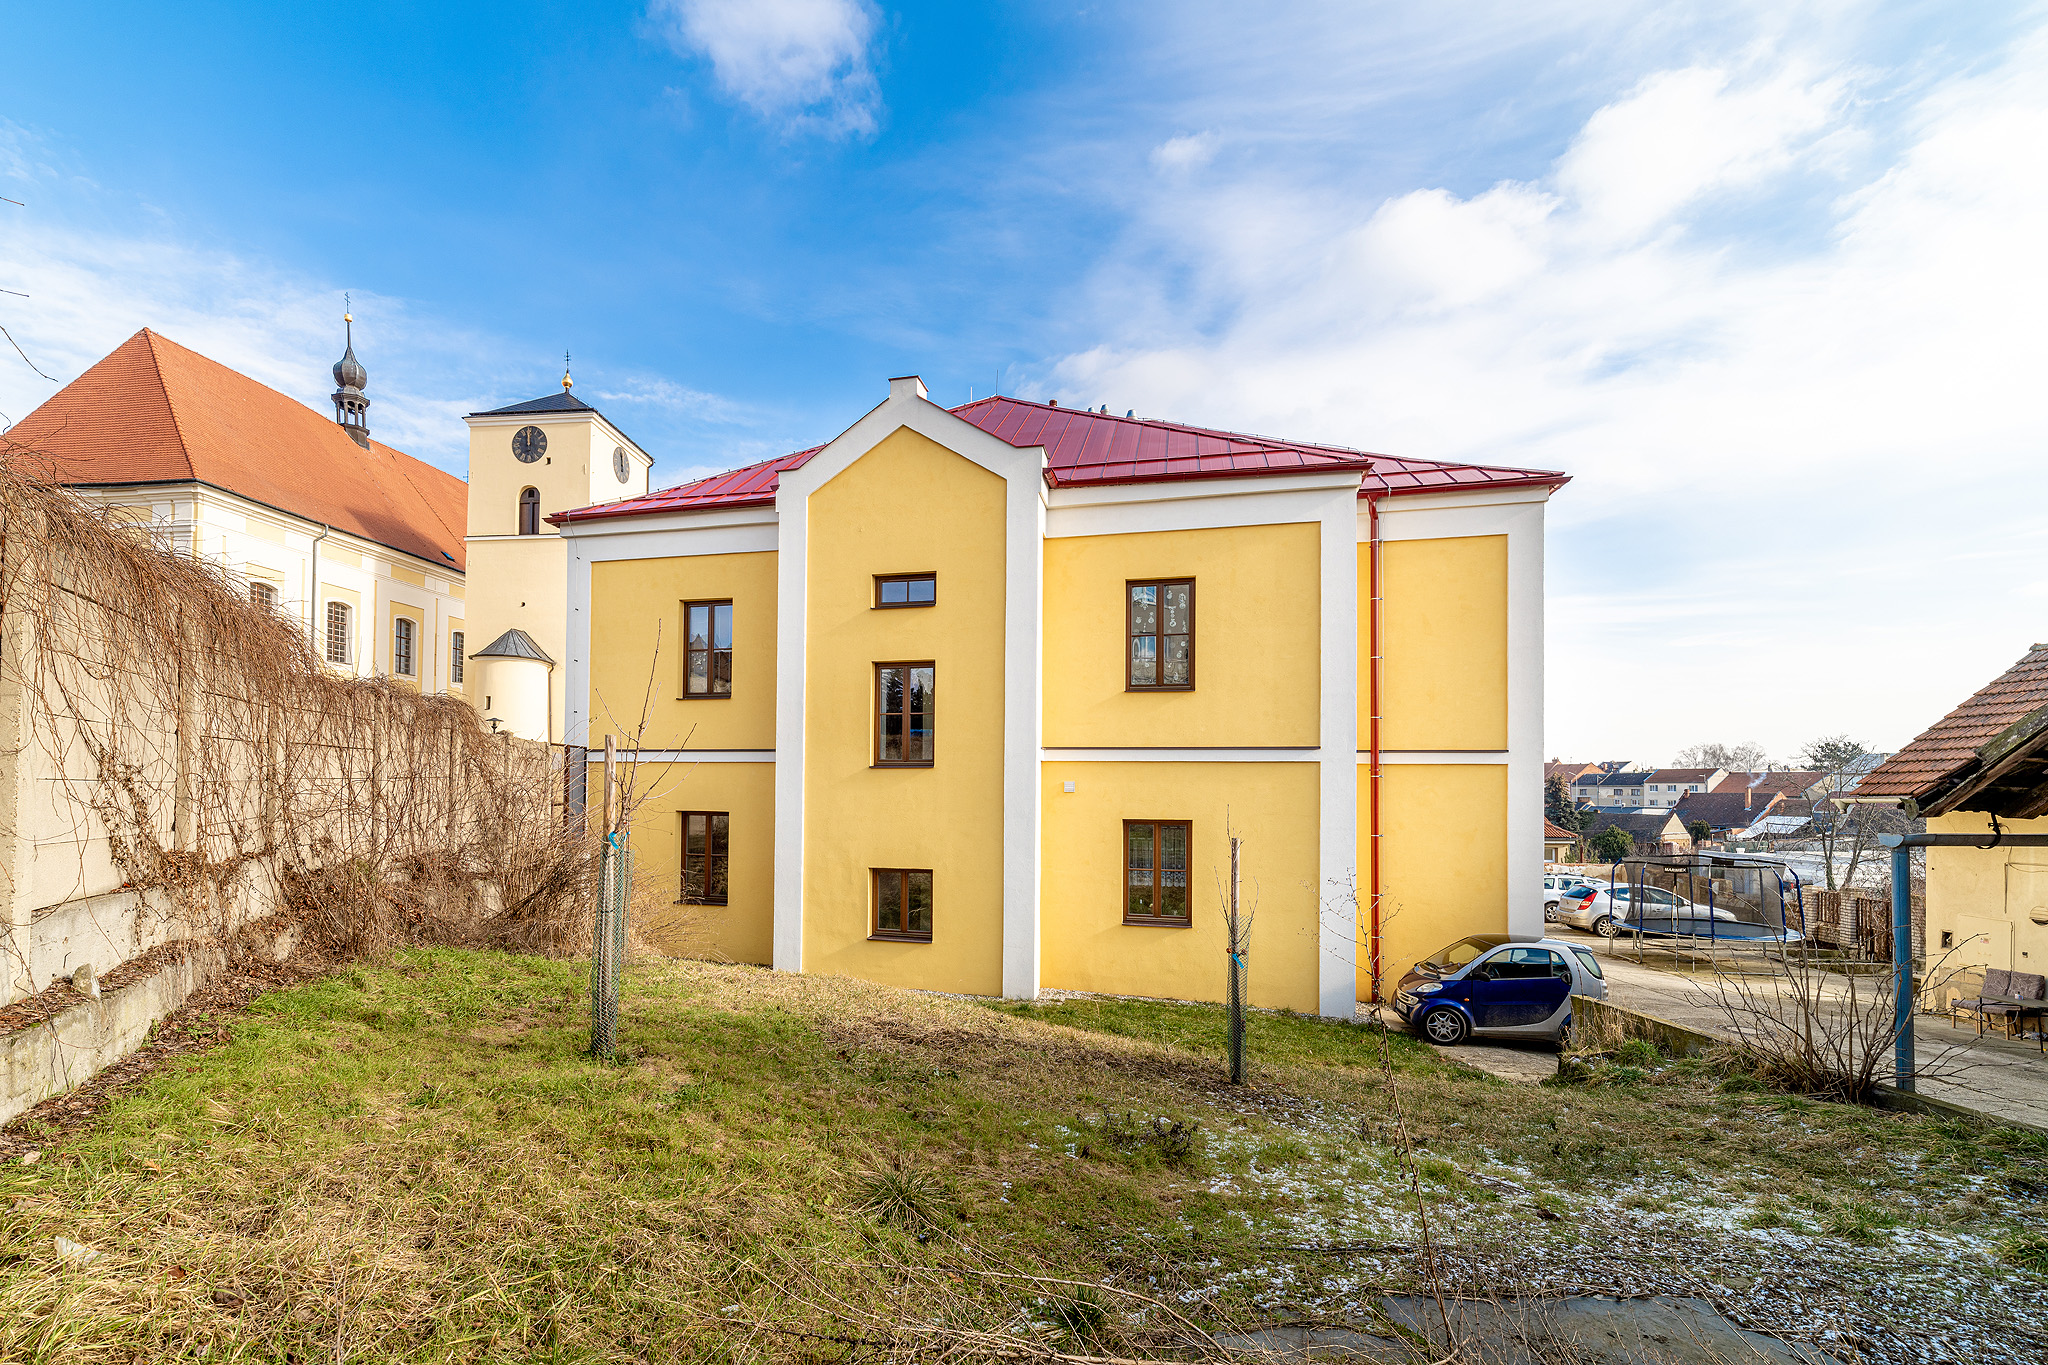 Rozvoj sociálního bydlení - Určice